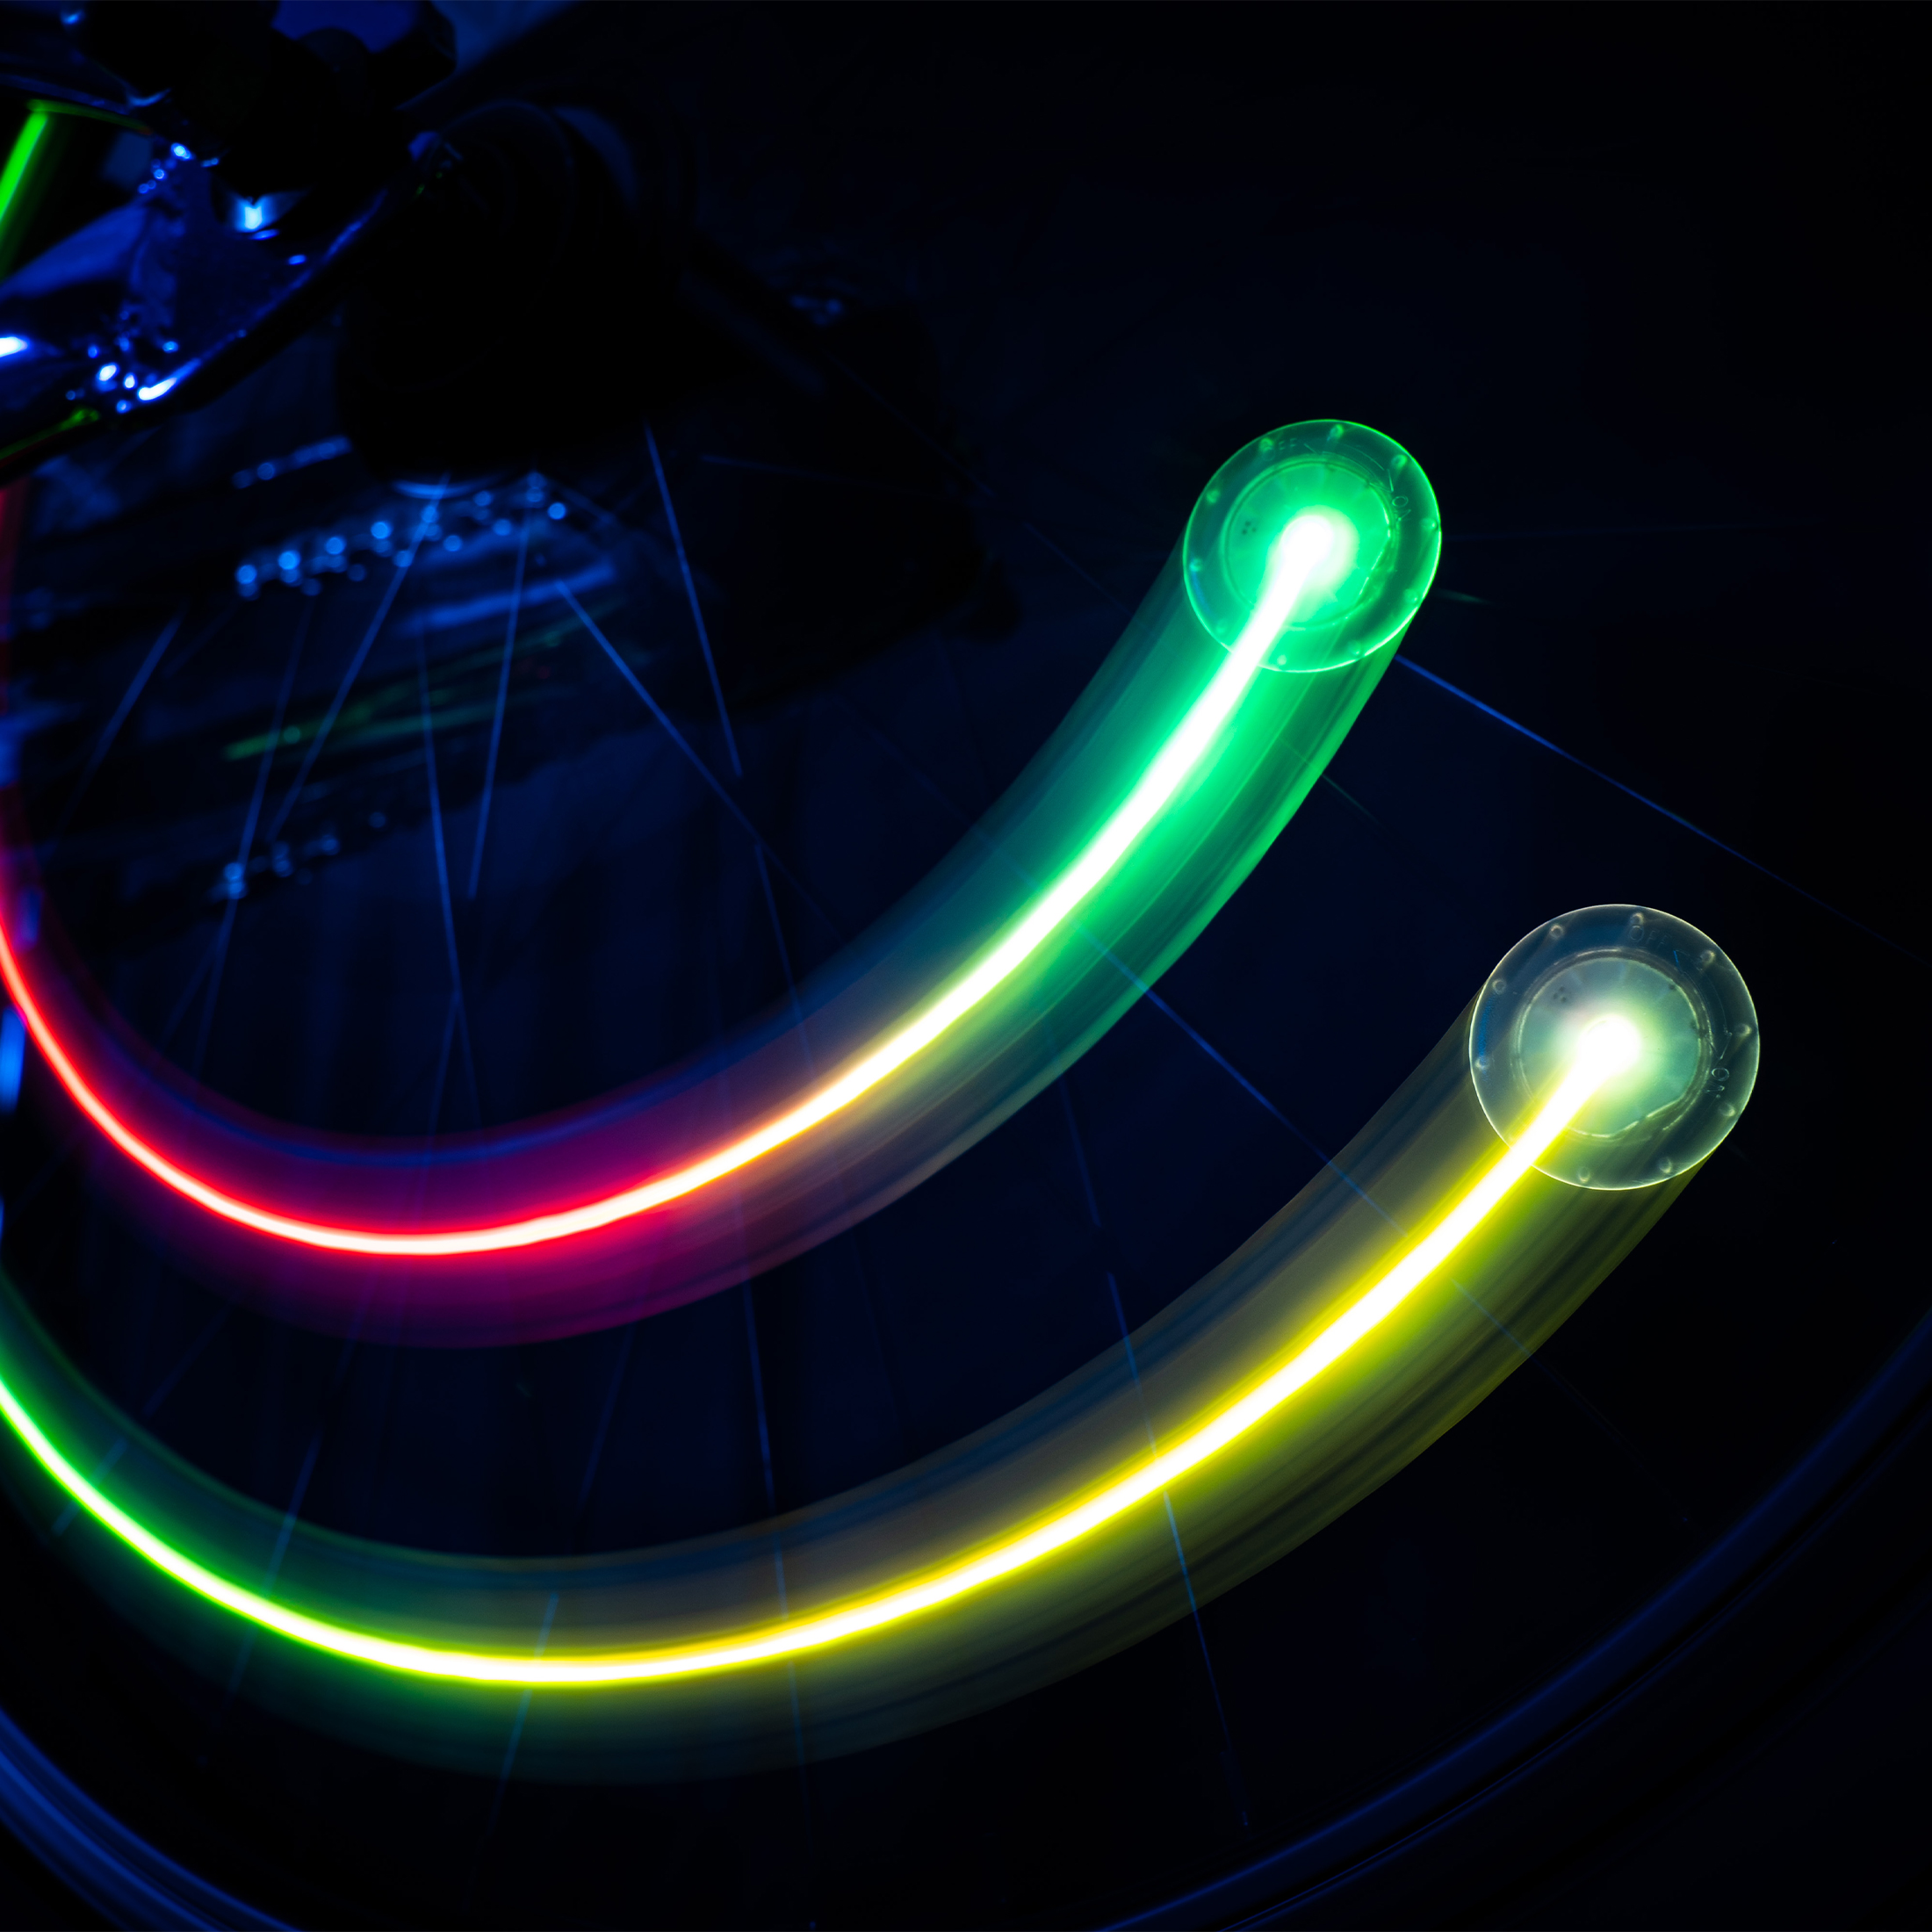 Color-changing LED bike spoke clips, 2 pack